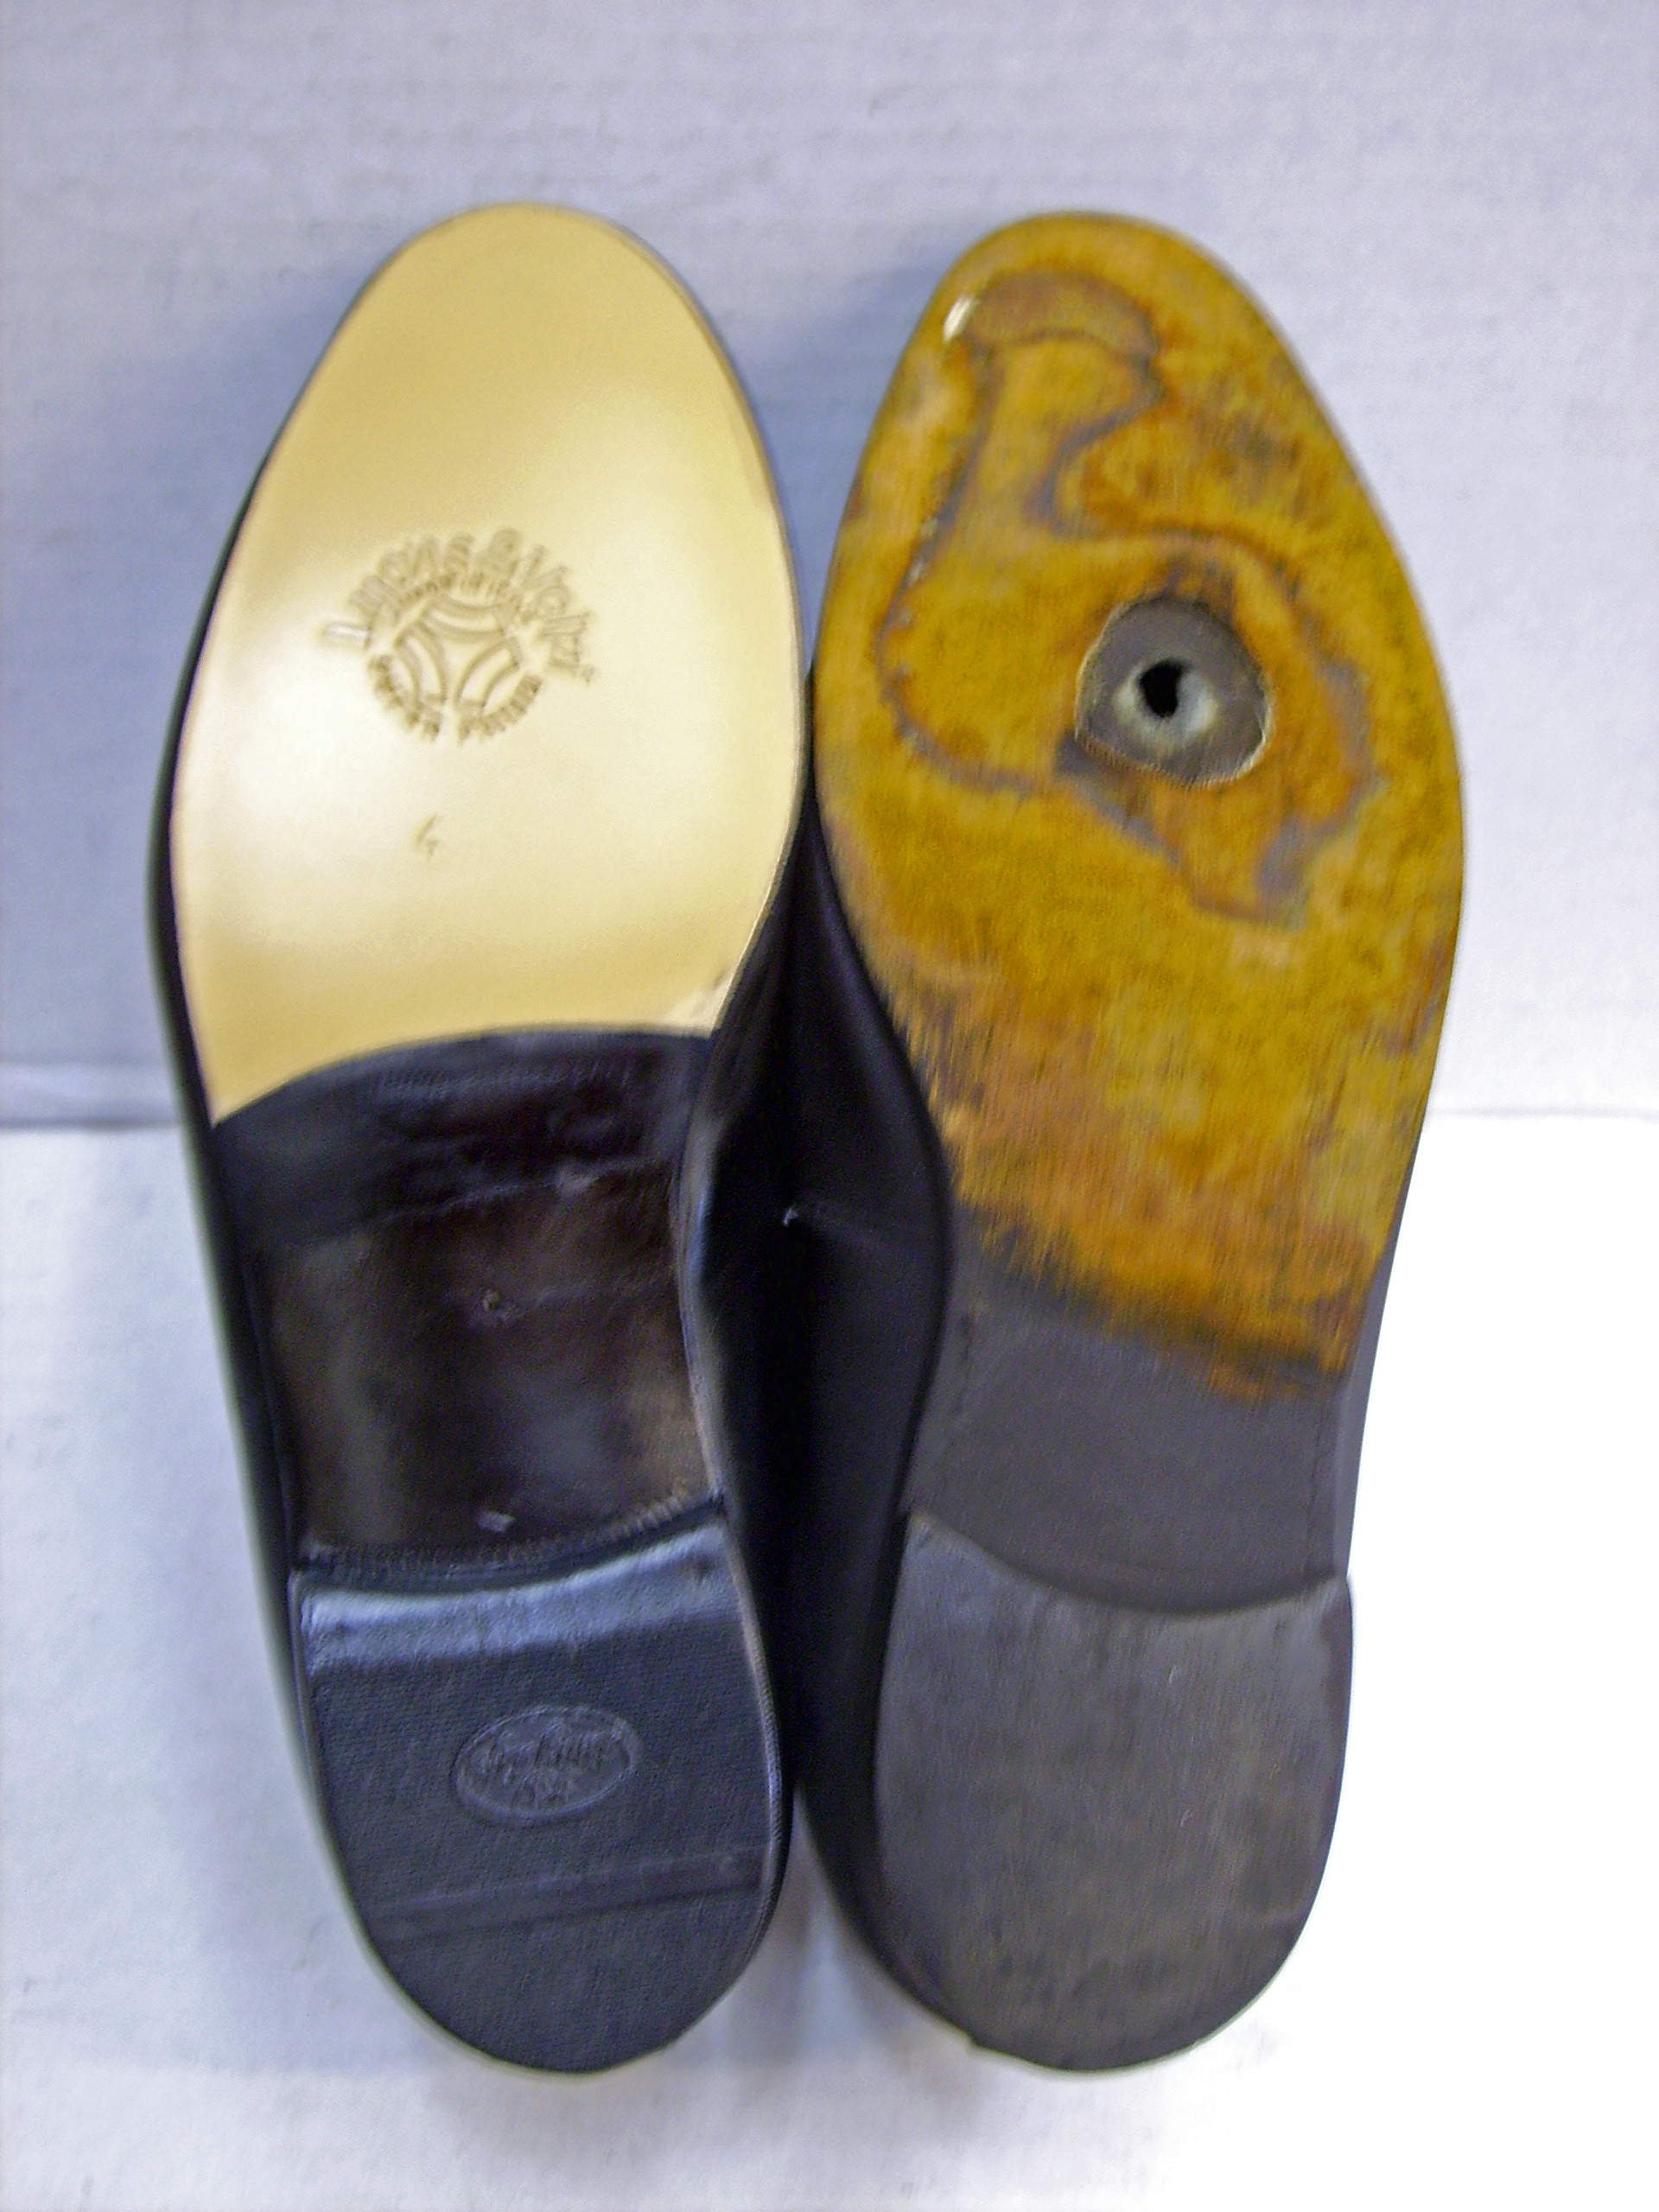 replacing boot soles